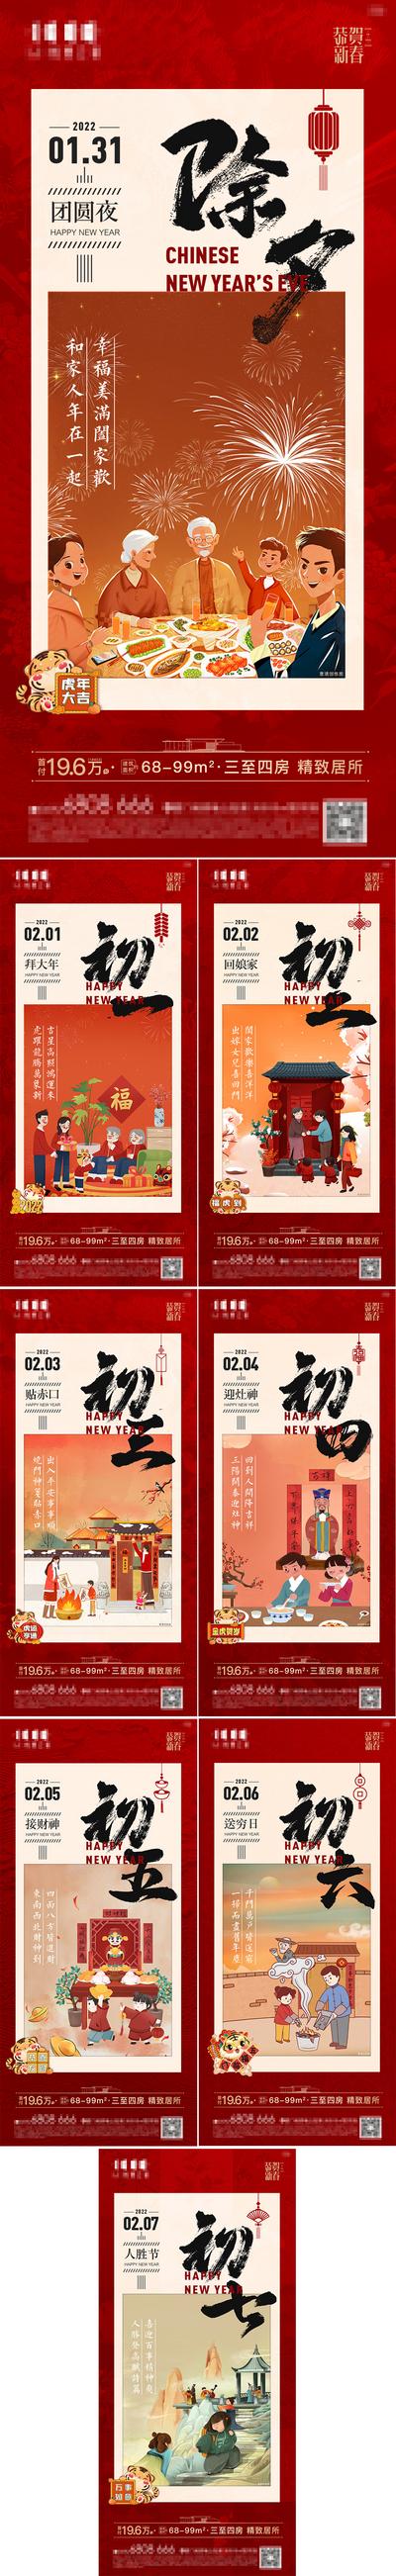 南门网 广告 海报 新年 春节 拜年 大年初一 迎财神 插画 手绘 系列